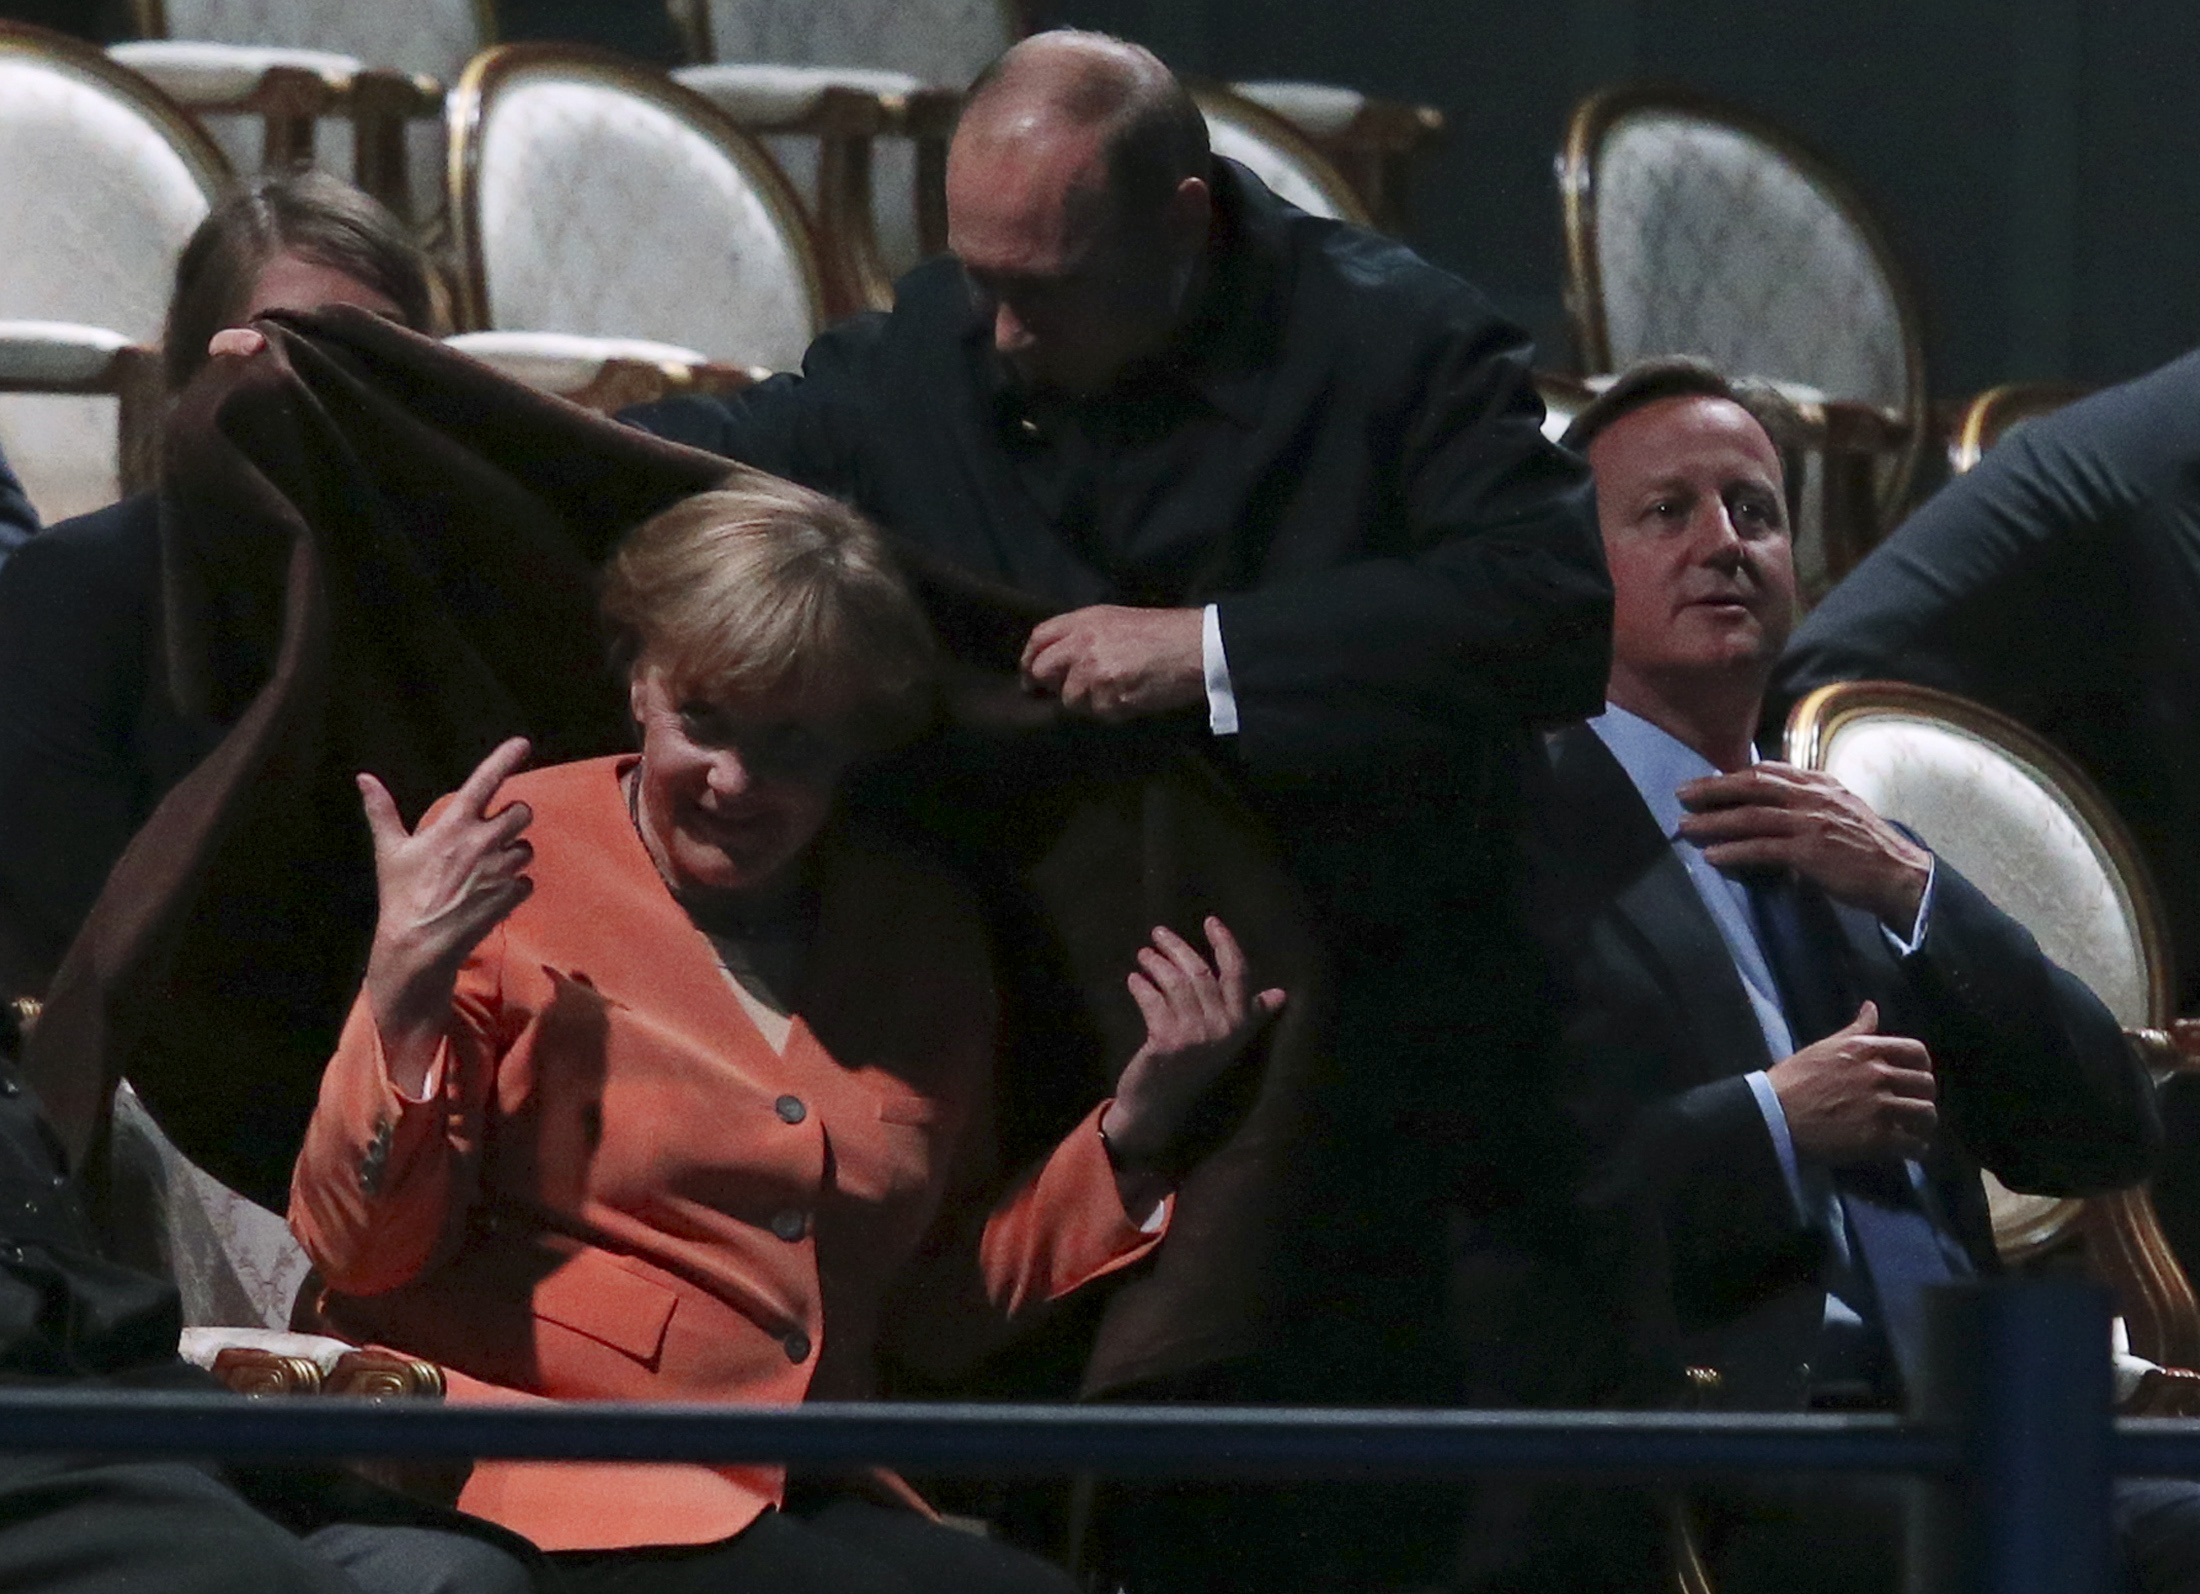 6/10. Путин је први пут искористио шал да покаже своје каваљерство на самиту Г-20 у Санкт Петербургу, када је њиме огрнуо немачку канцеларку Ангелу Меркел. Тада овај гест није изазвао посебну пажњу јавности.